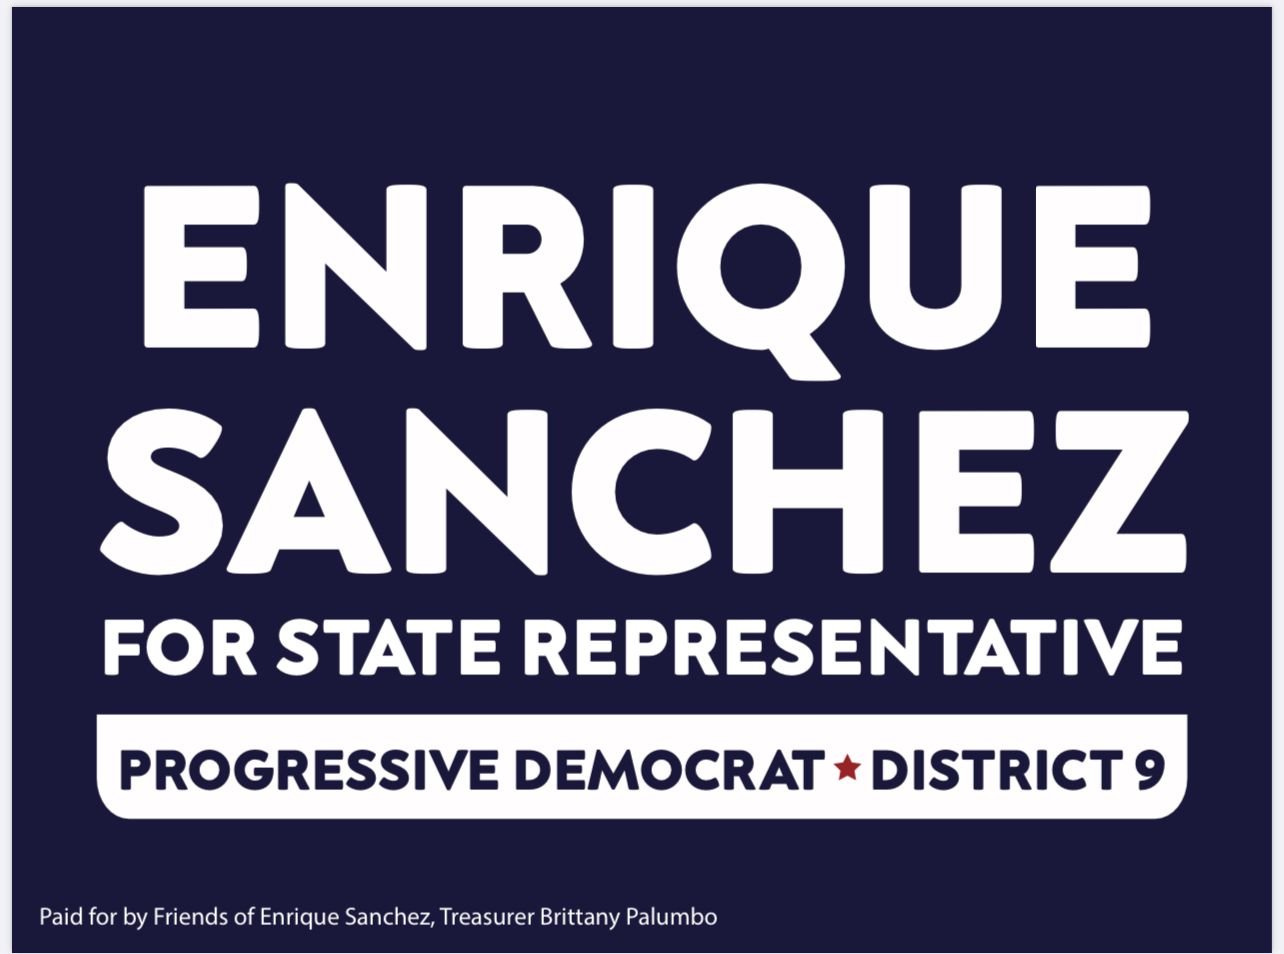 Enrique Sánchez for State Rep District 9